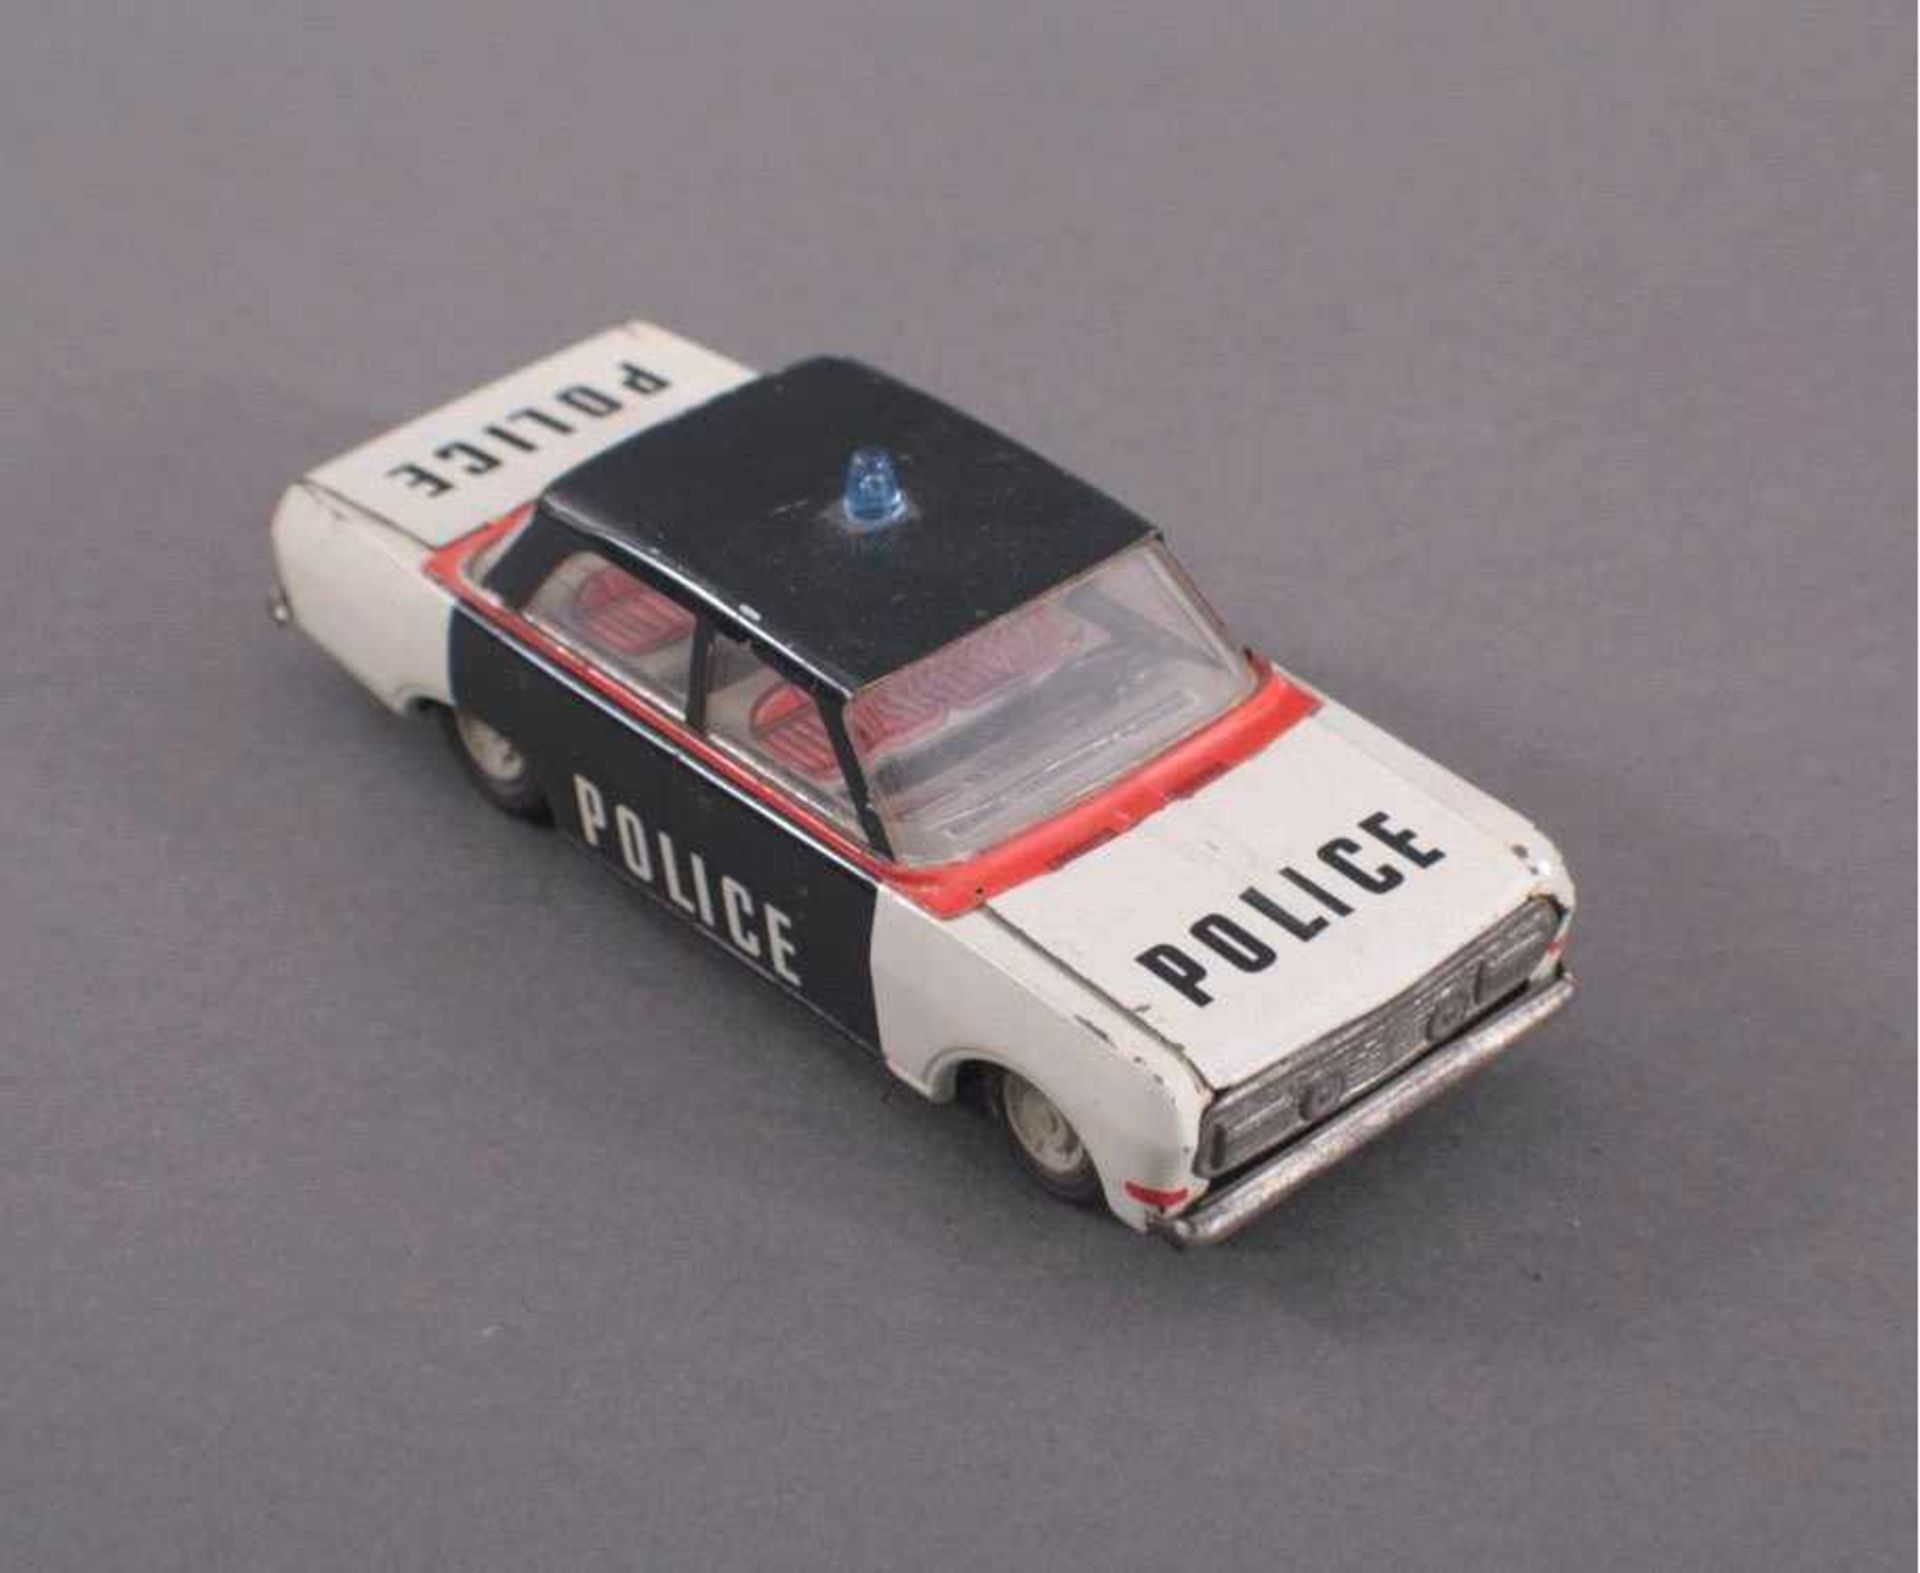 Blechspielzeug Auto, Police, DDRPolizeiauto in schwarz, weiß und rot. Blaulicht auf demDach.